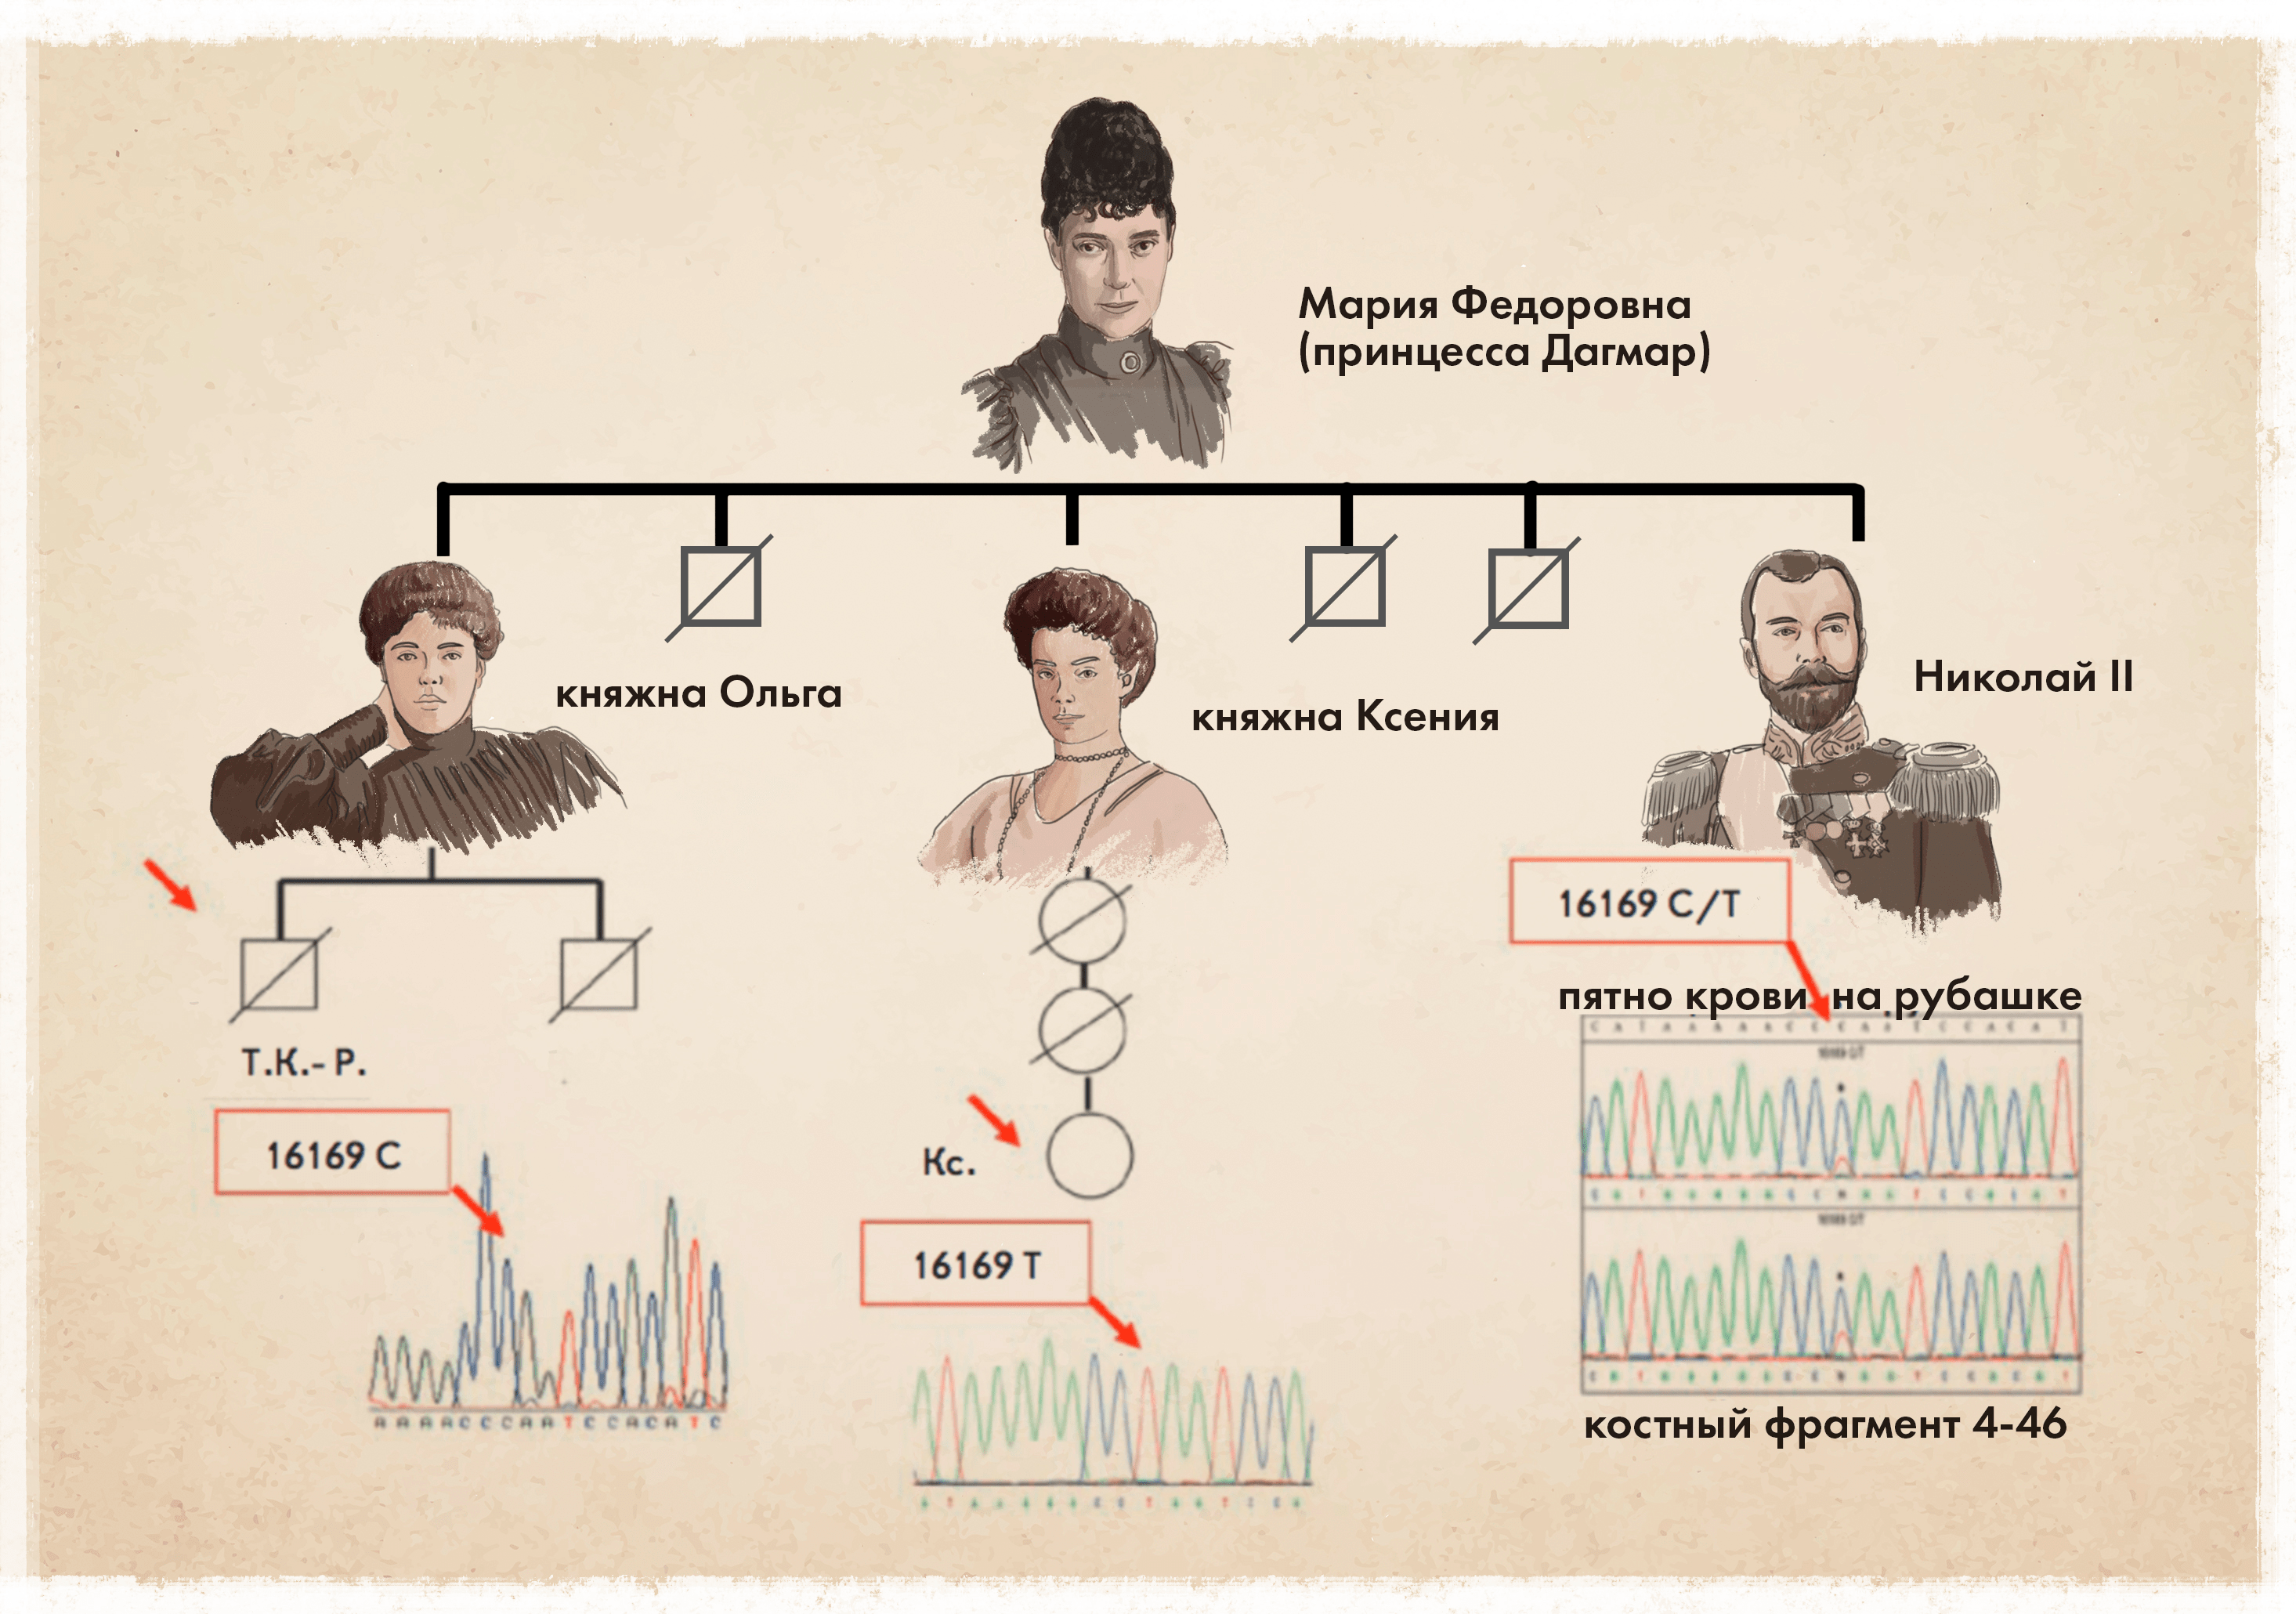 Анализ гетероплазмии в митохондриальных (материнских) линиях императора Николая II